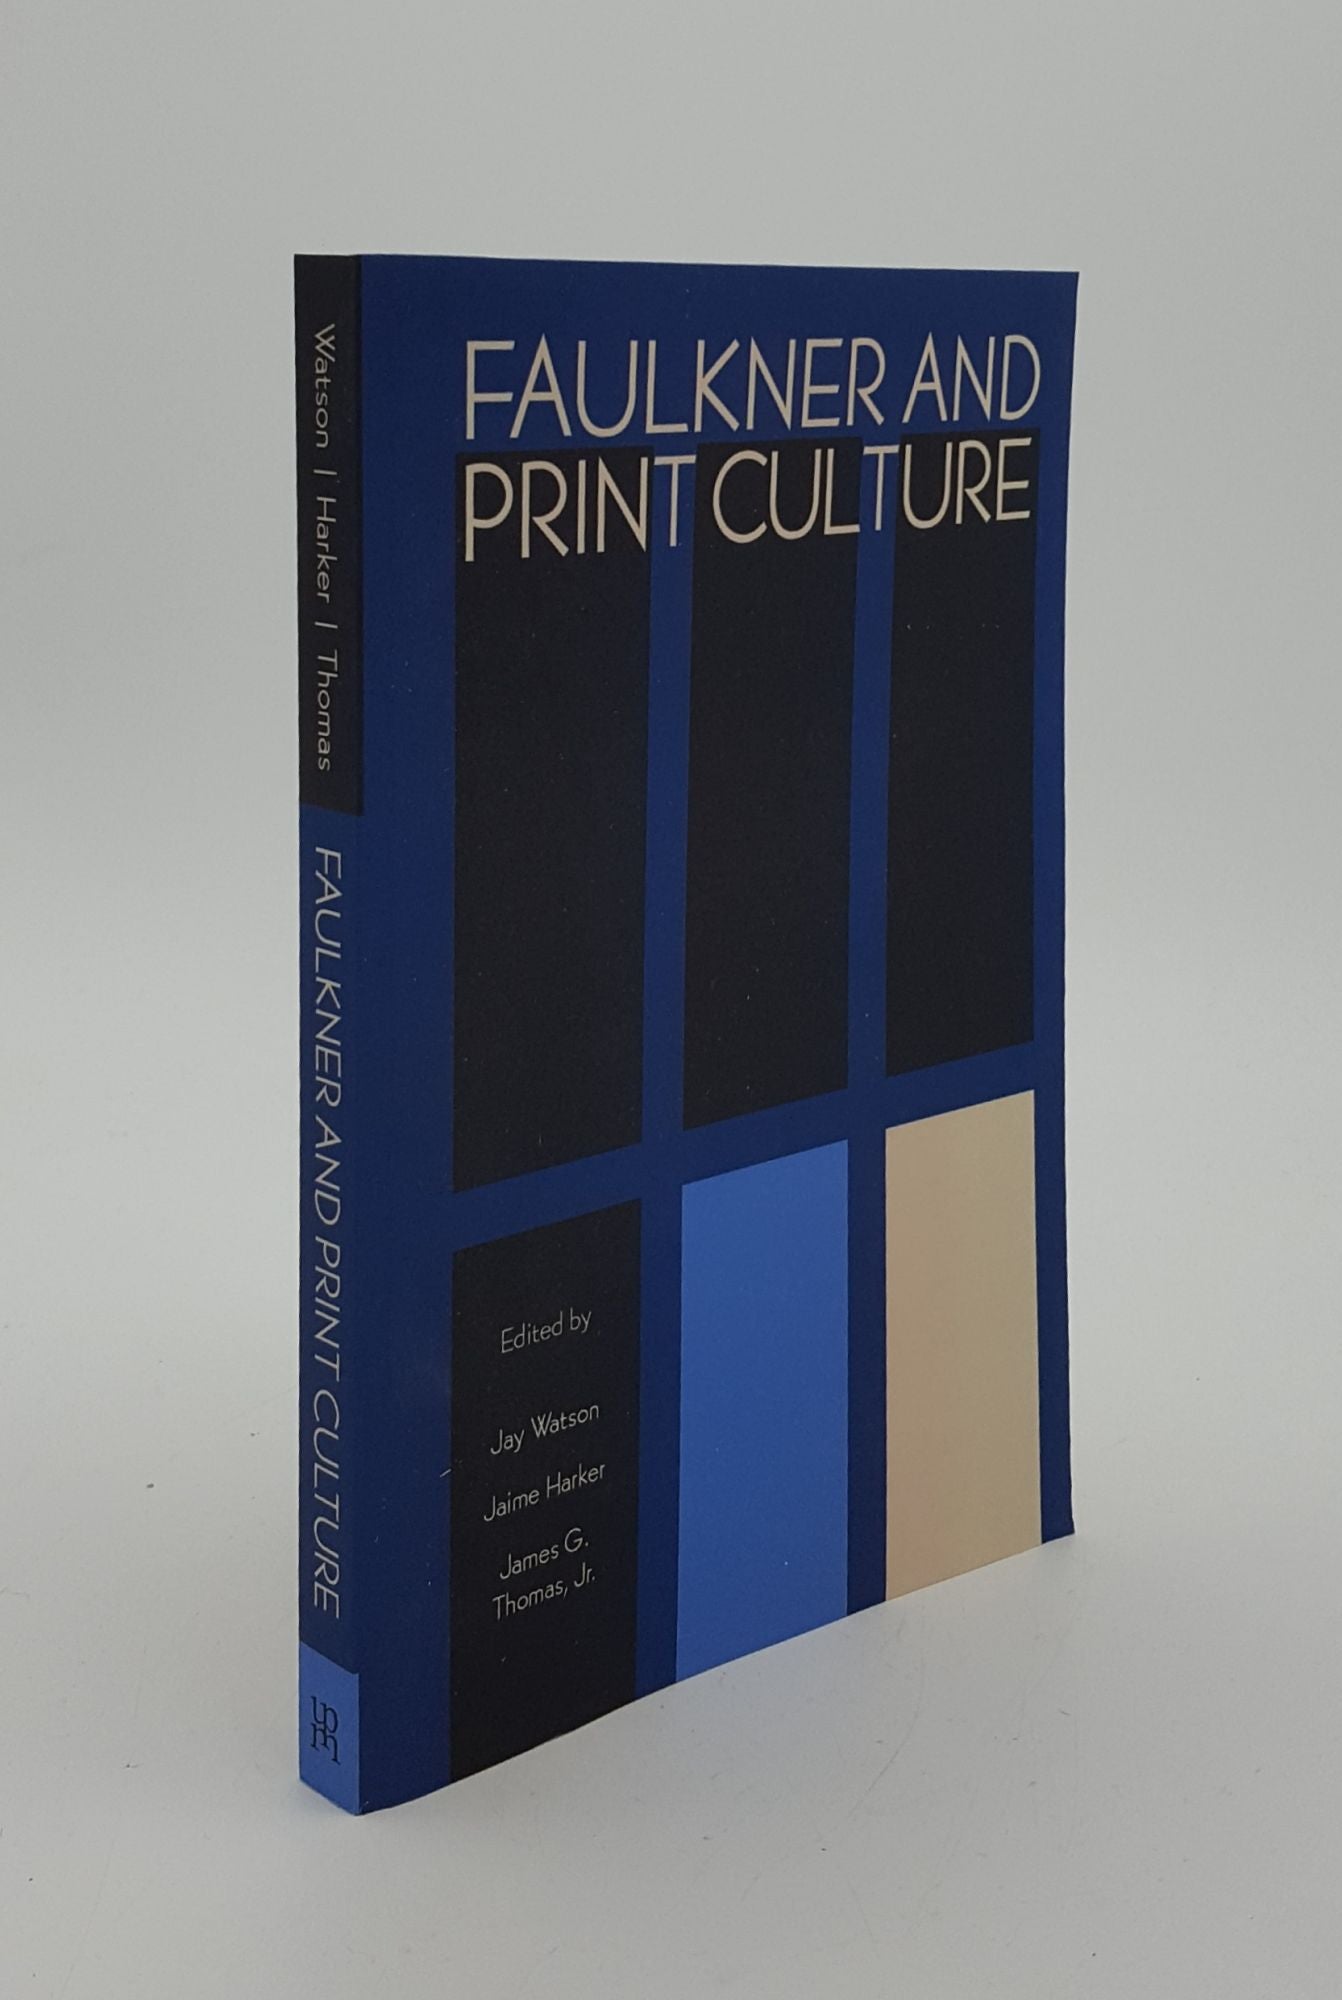 WATSON Jay, HARKER Jaime, THOMAS James G. - Faulkner and Print Culture Faulkner and Yoknapatawpha 2015